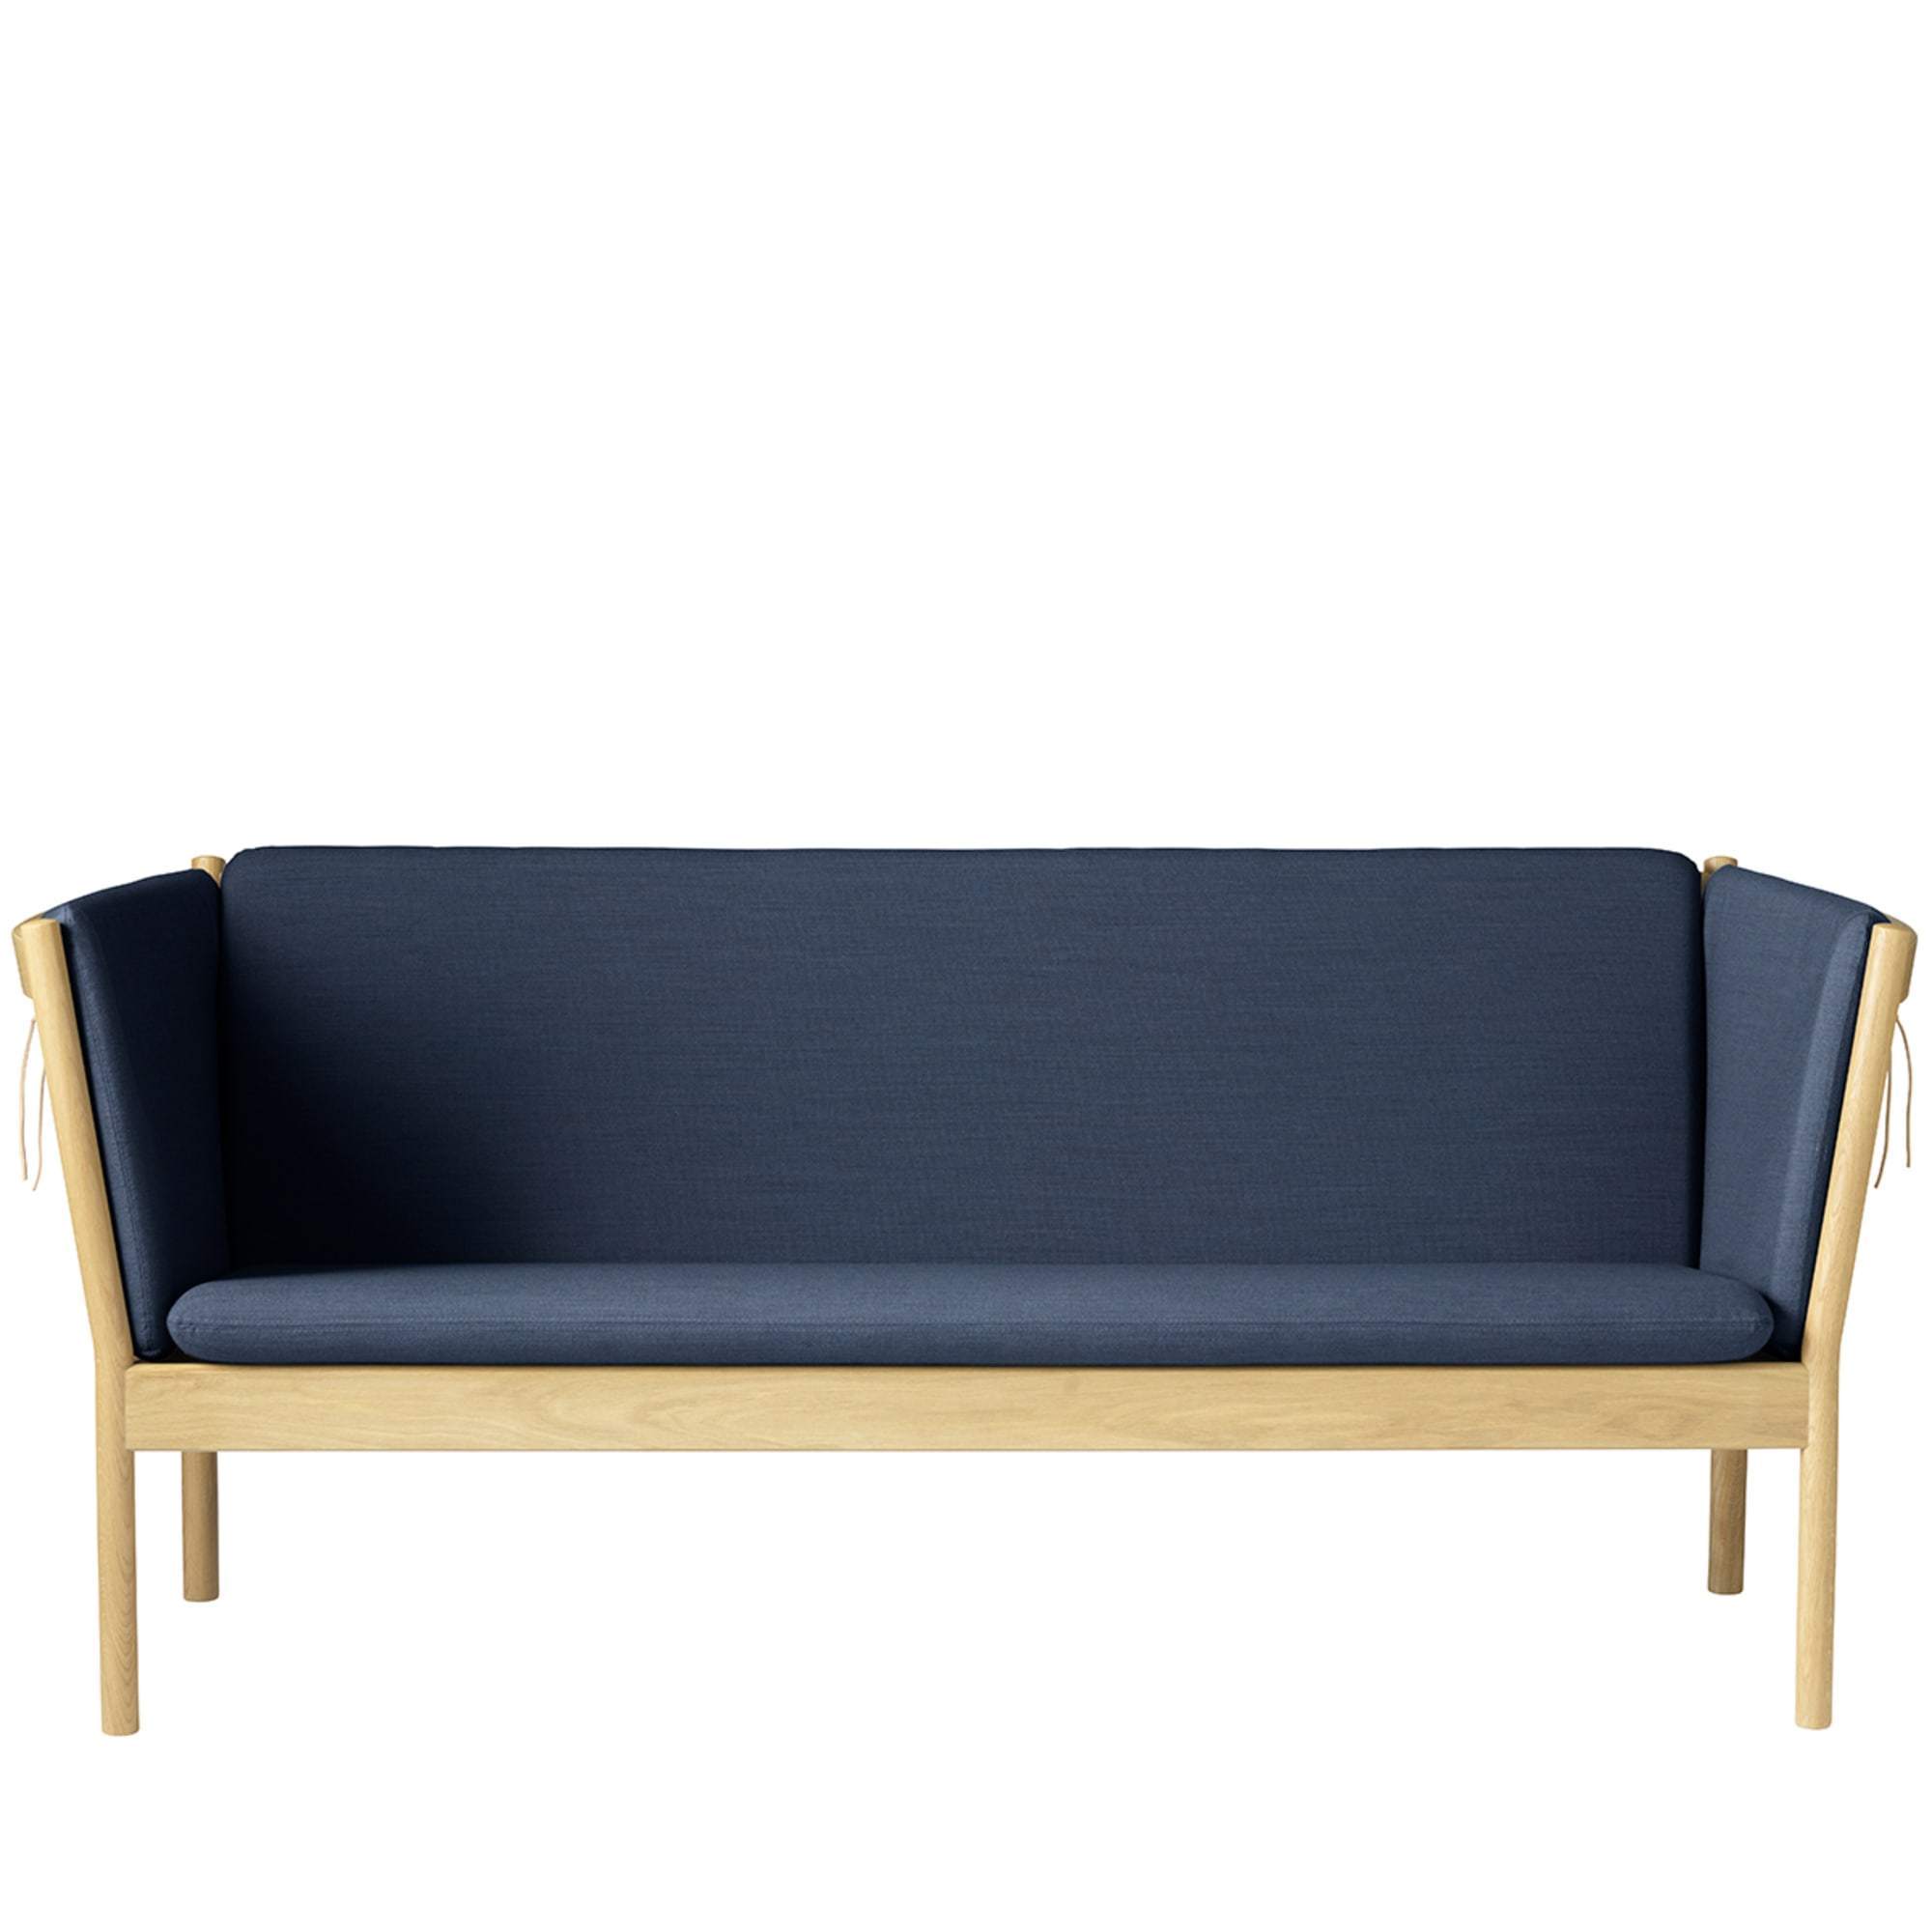 Fdb Møbler J149 3 Person Sofa, Oak, Dark Blue Fabric